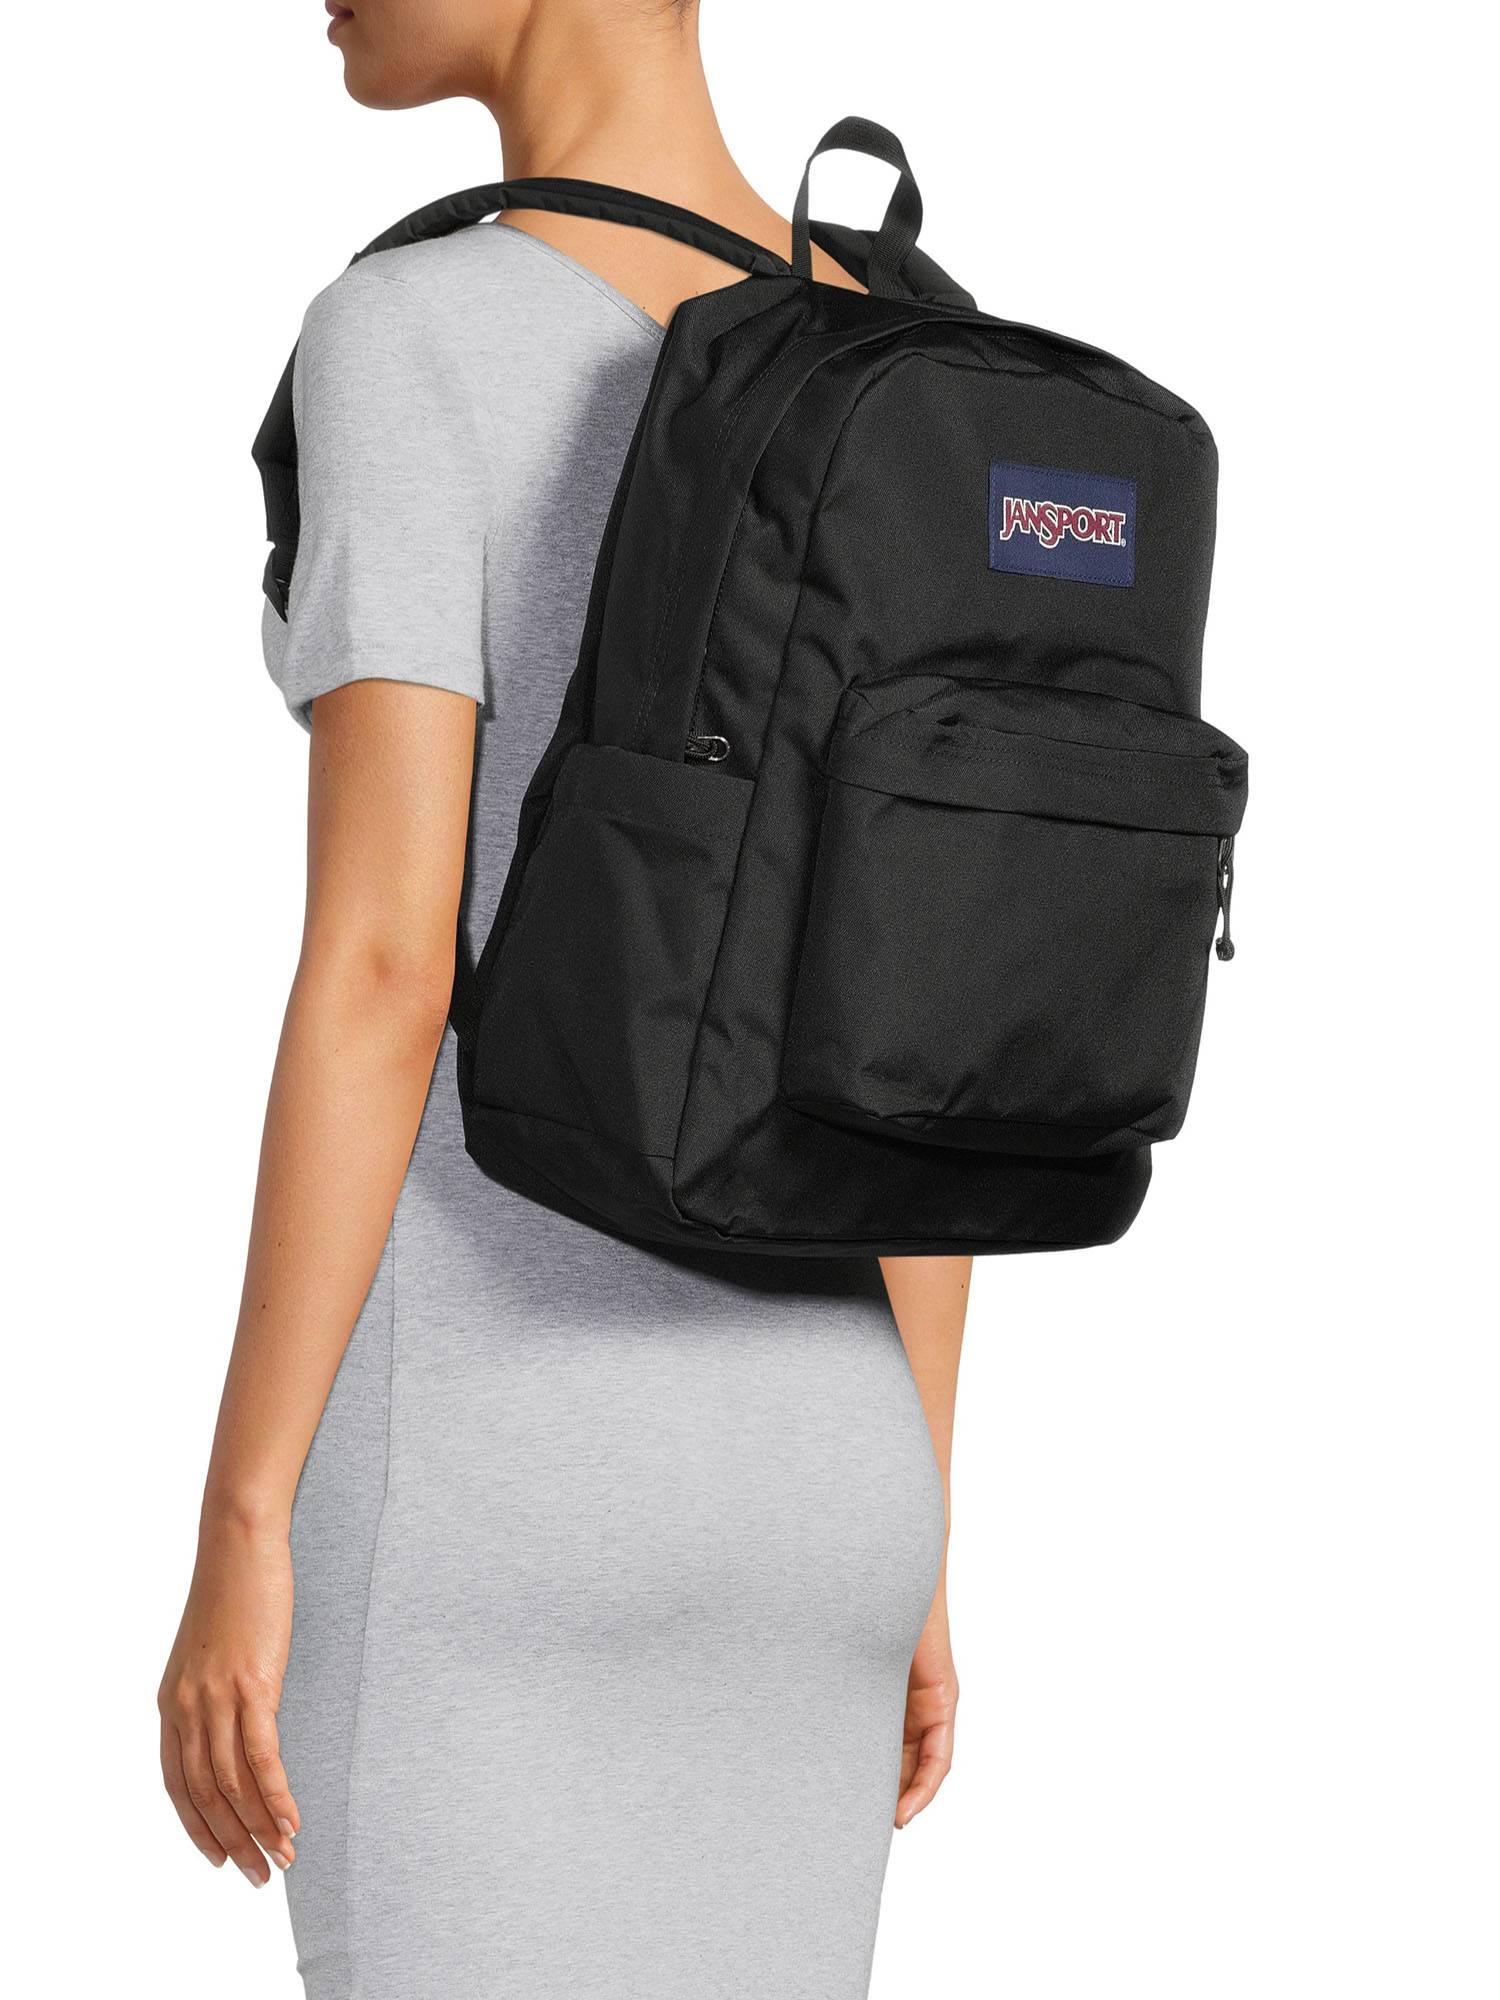 JanSport Unisex SuperBreak Backpack School Bag Black - Walmart.com